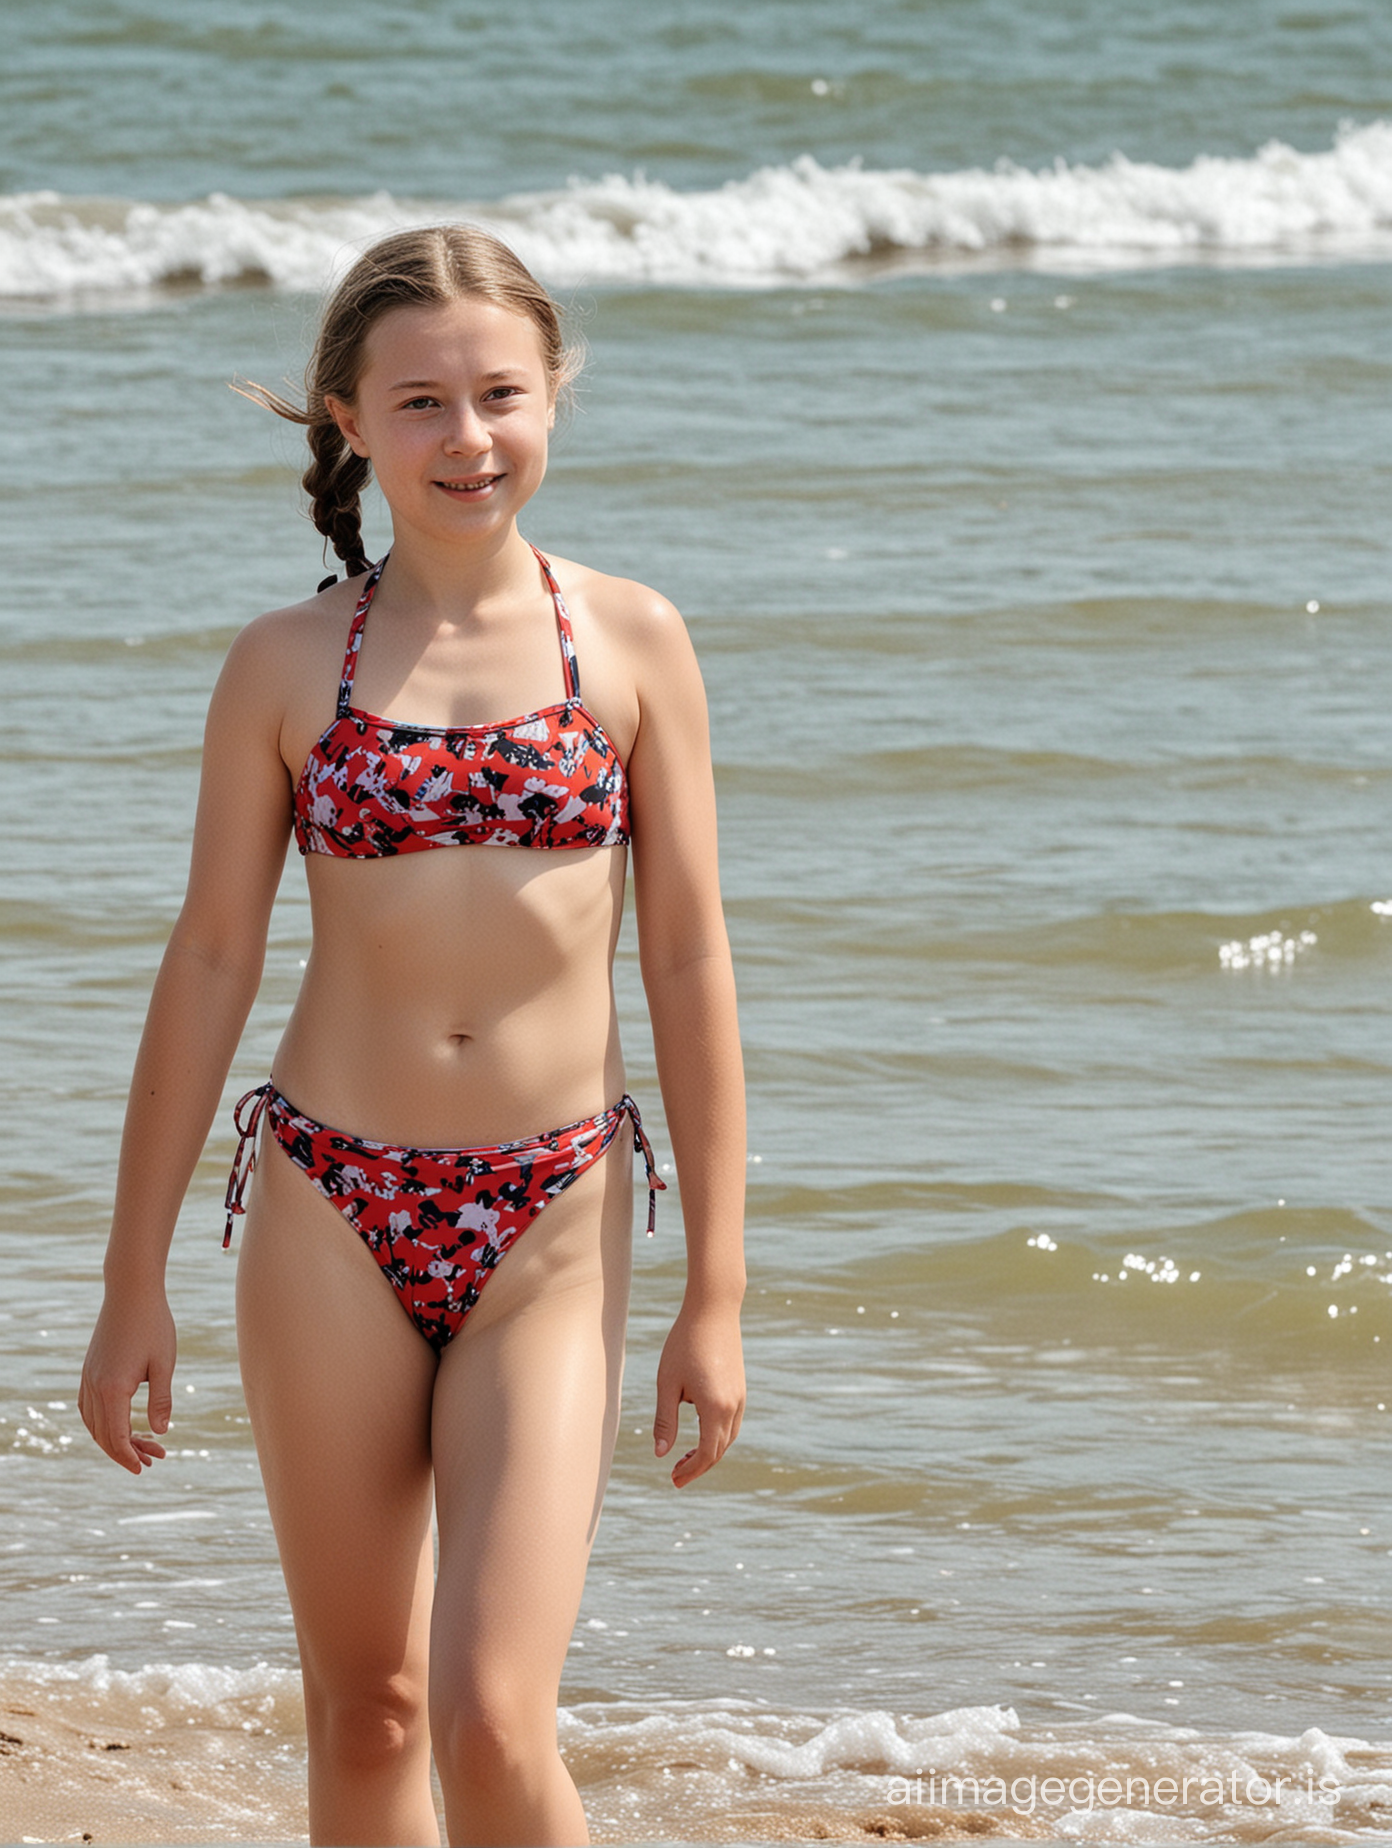 Greta Thunberg in bikini on beach